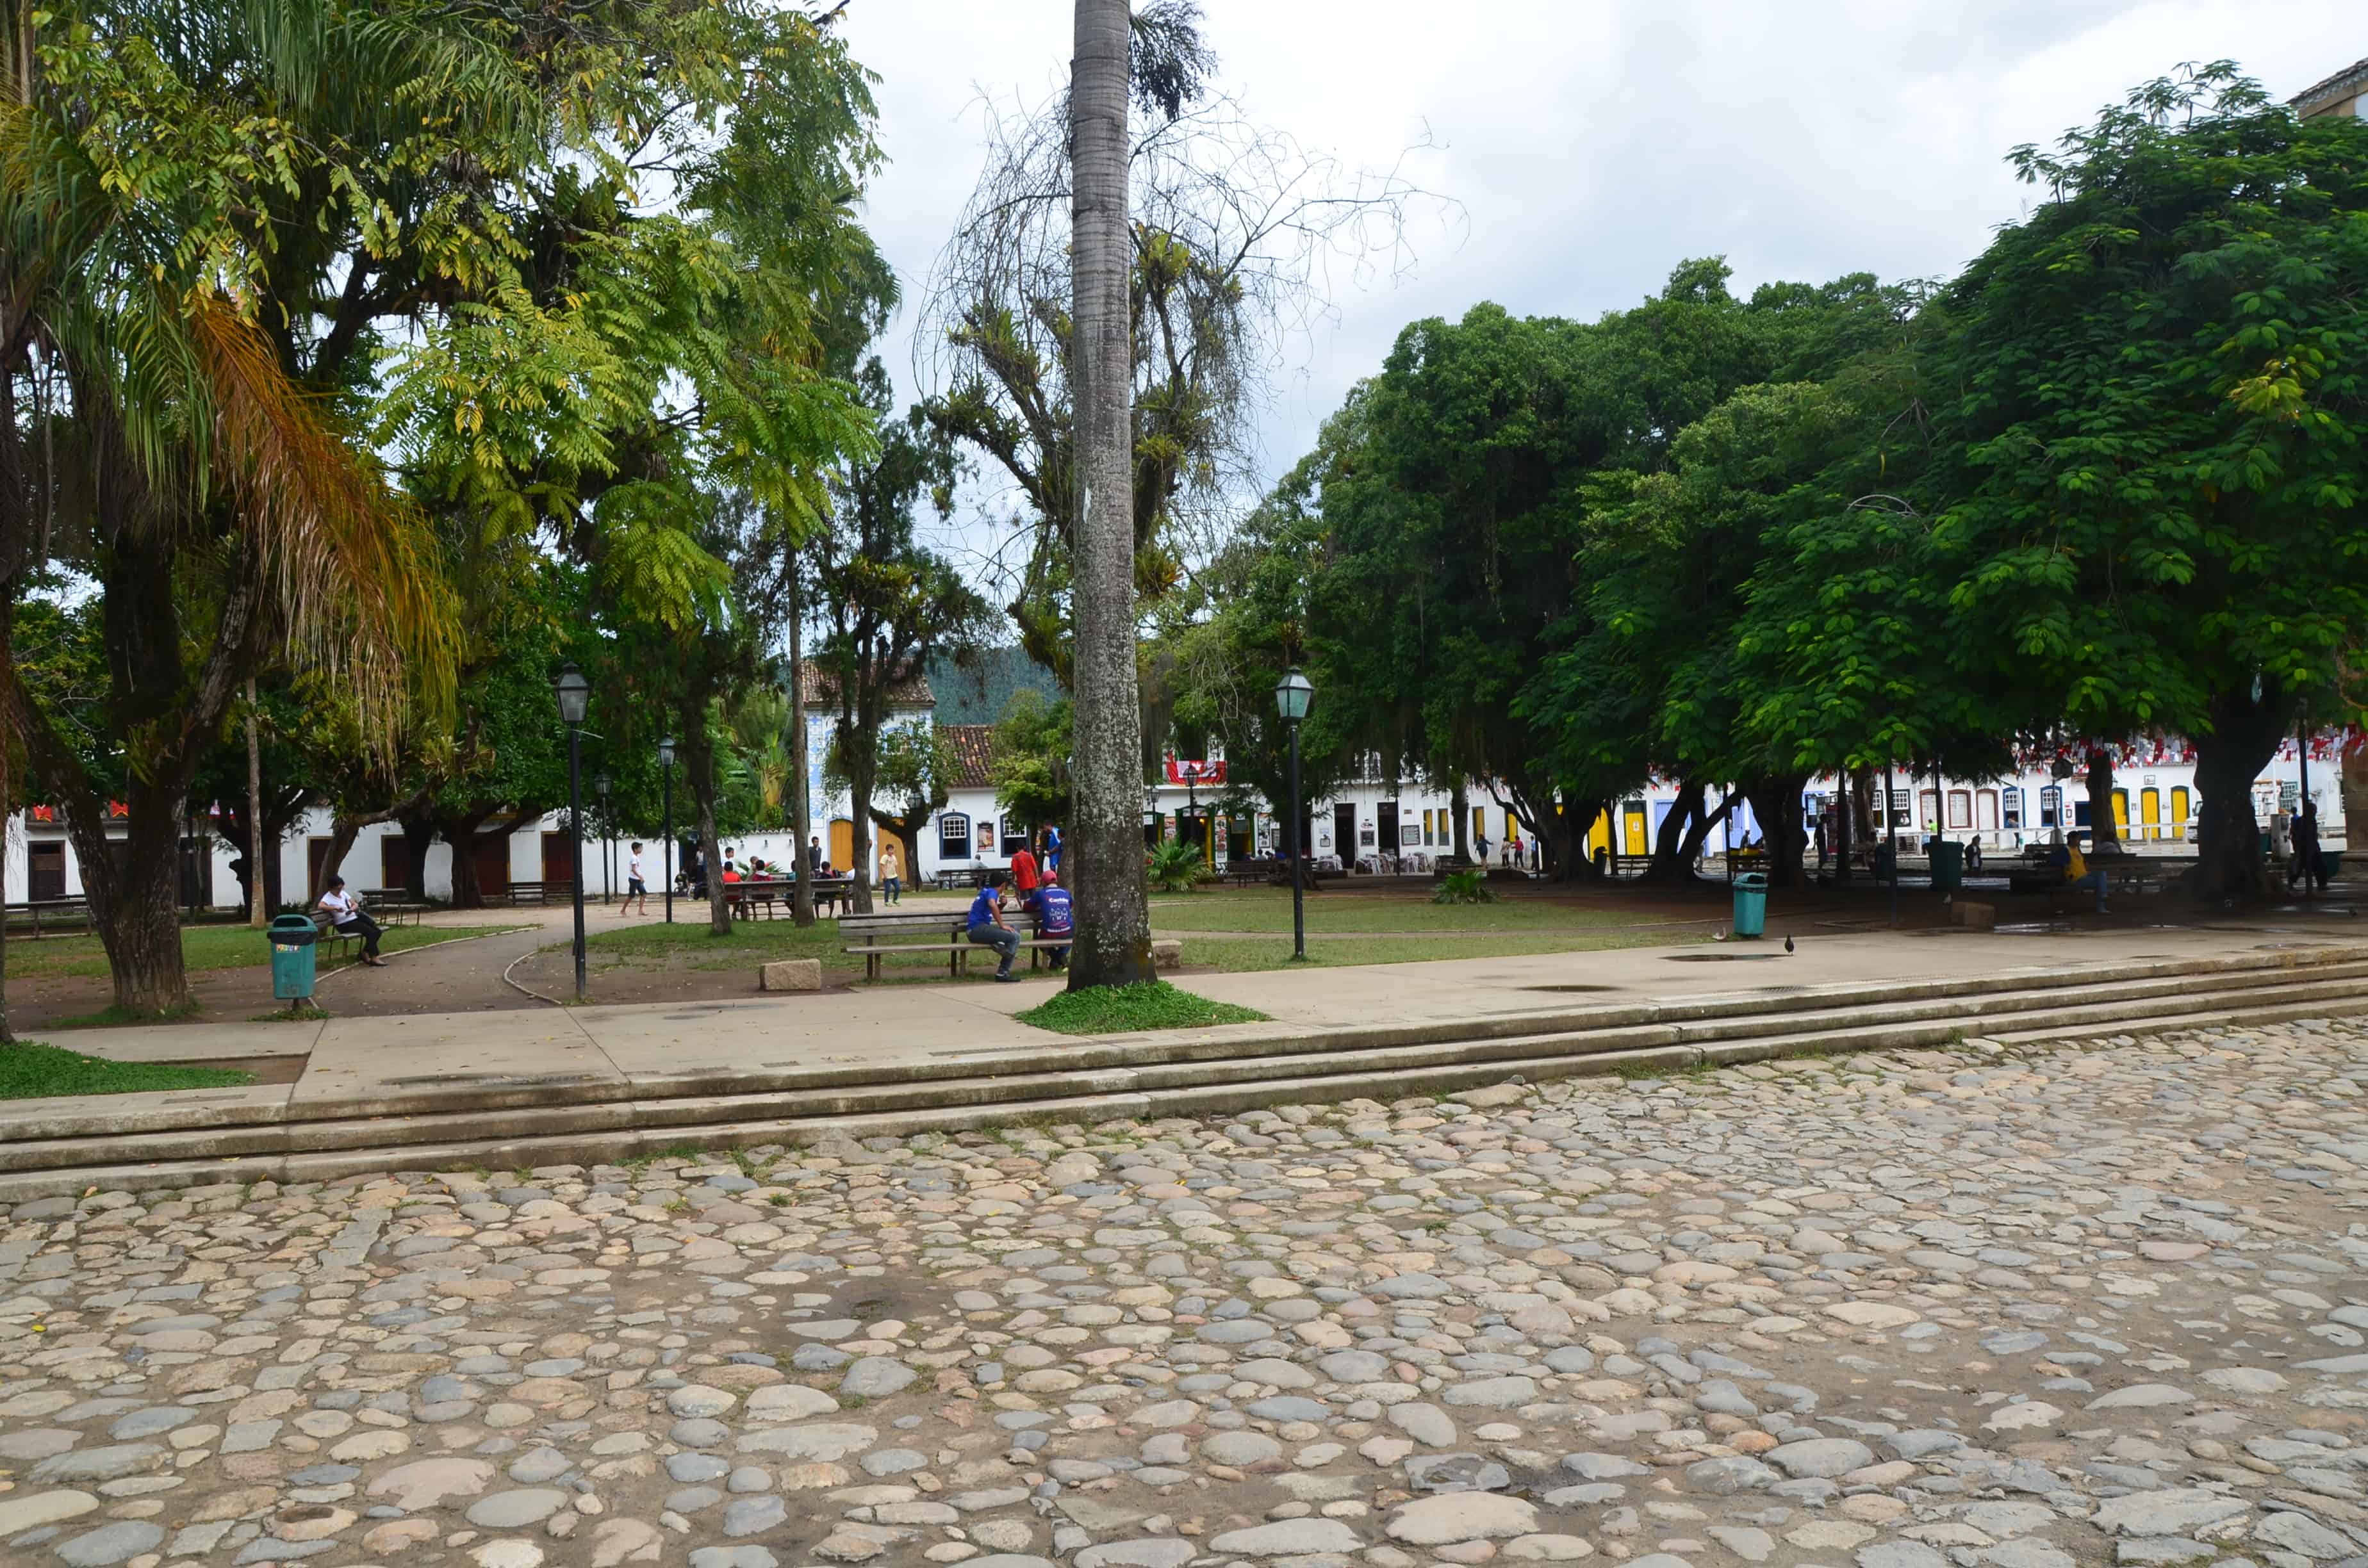 Praça da Matriz in Paraty, Brazil